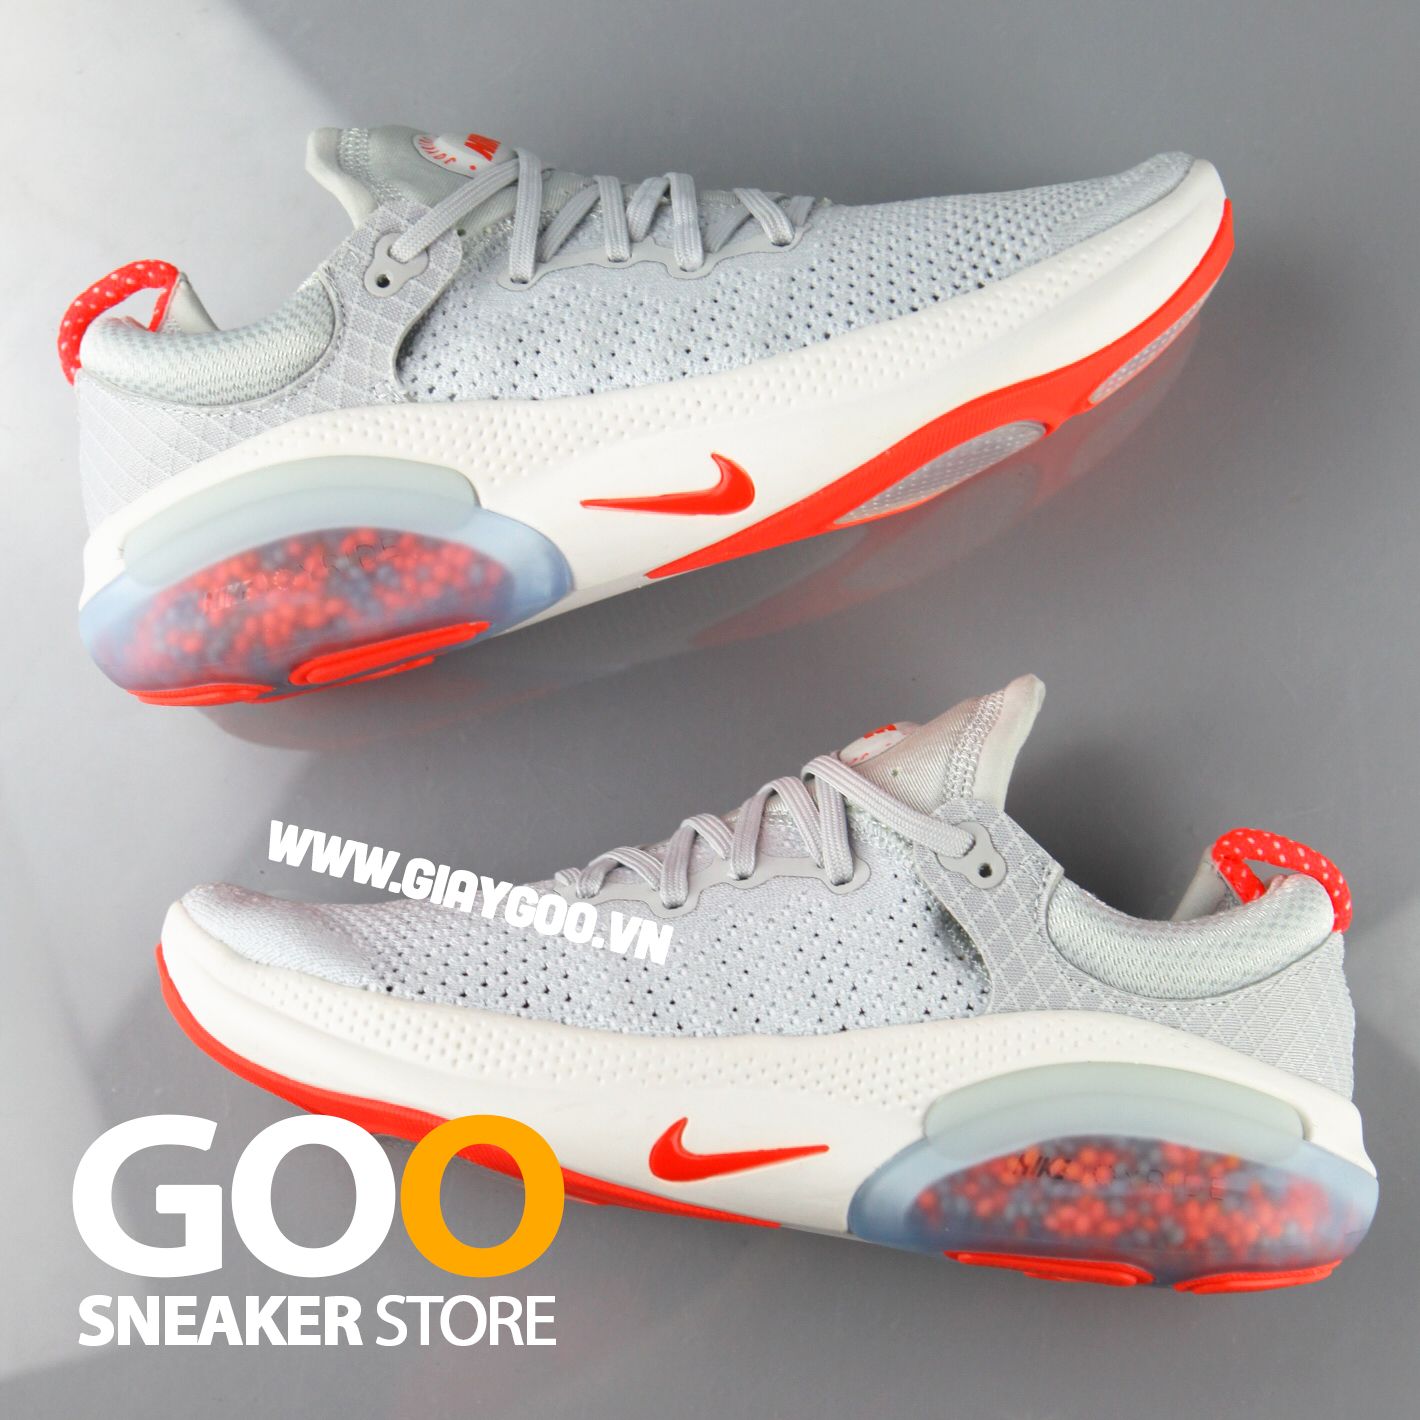  Giày Nike Joyride xám trắng đỏ 